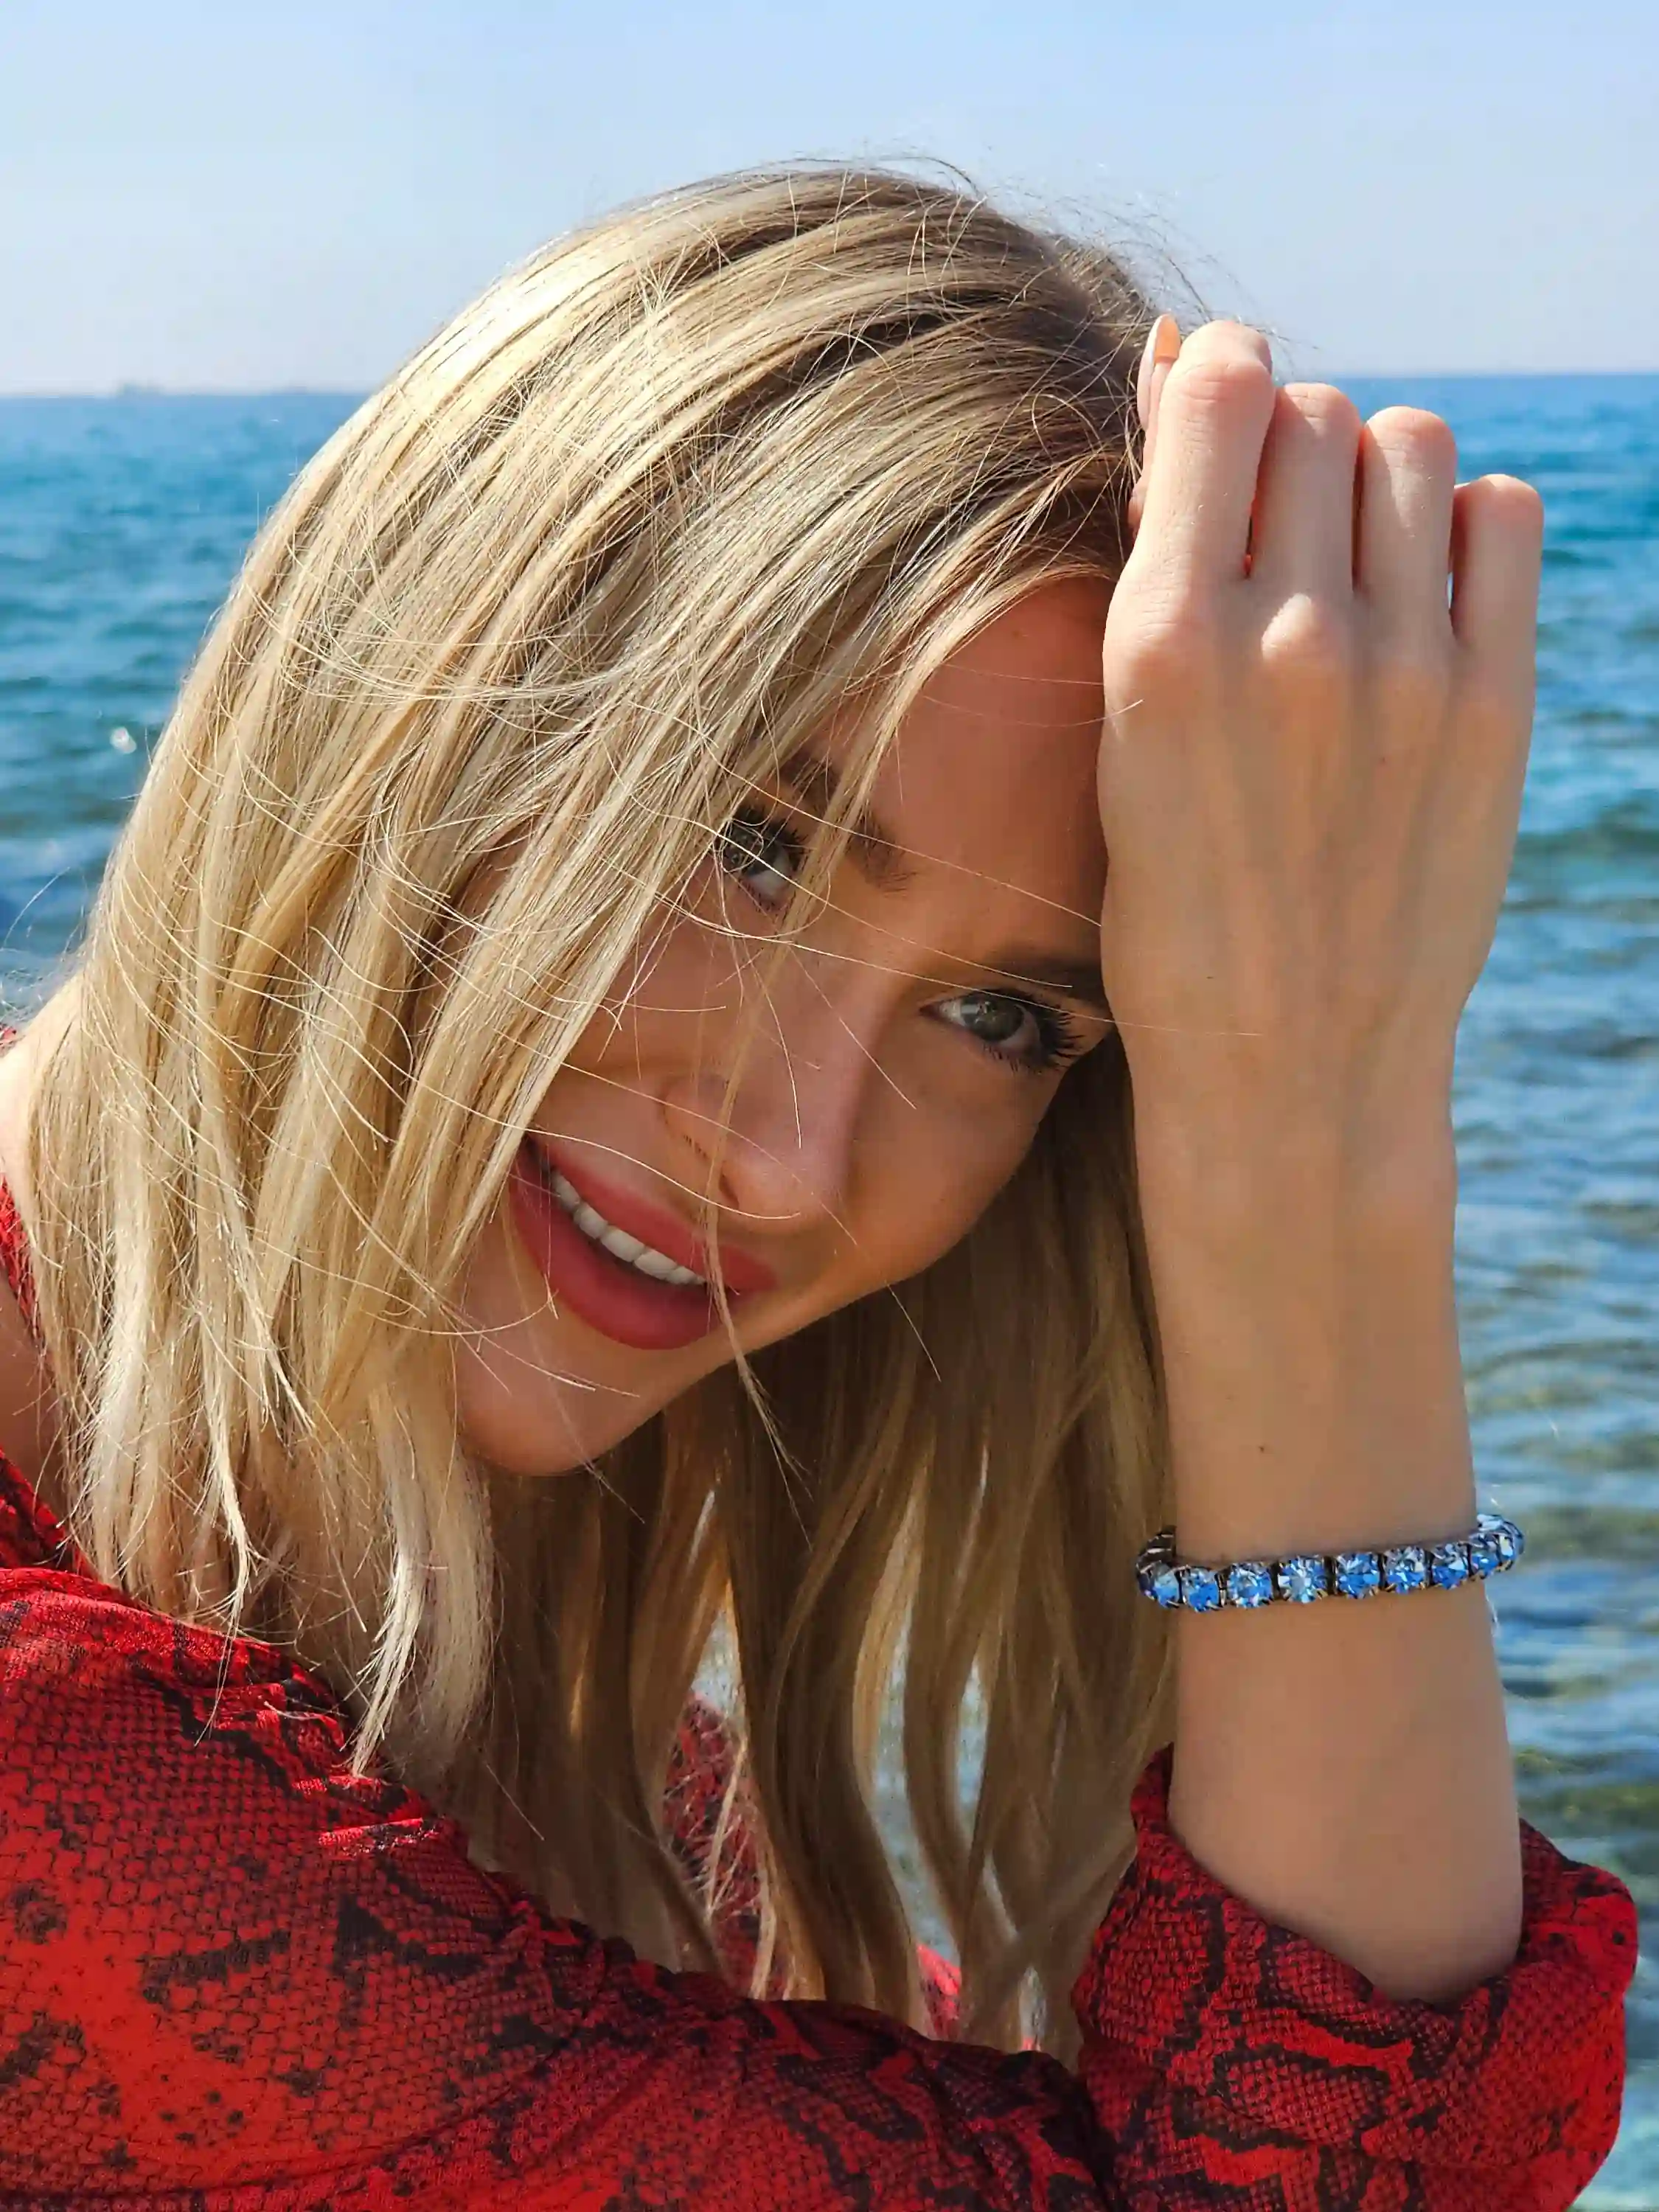 Blue Topaz Bracelet - Tennis Bracelet - Silver Gemstone Bracelet - Blue Topaz Jewelry - Birthstone bracelet - Dainty Bracelet - Gift for her 